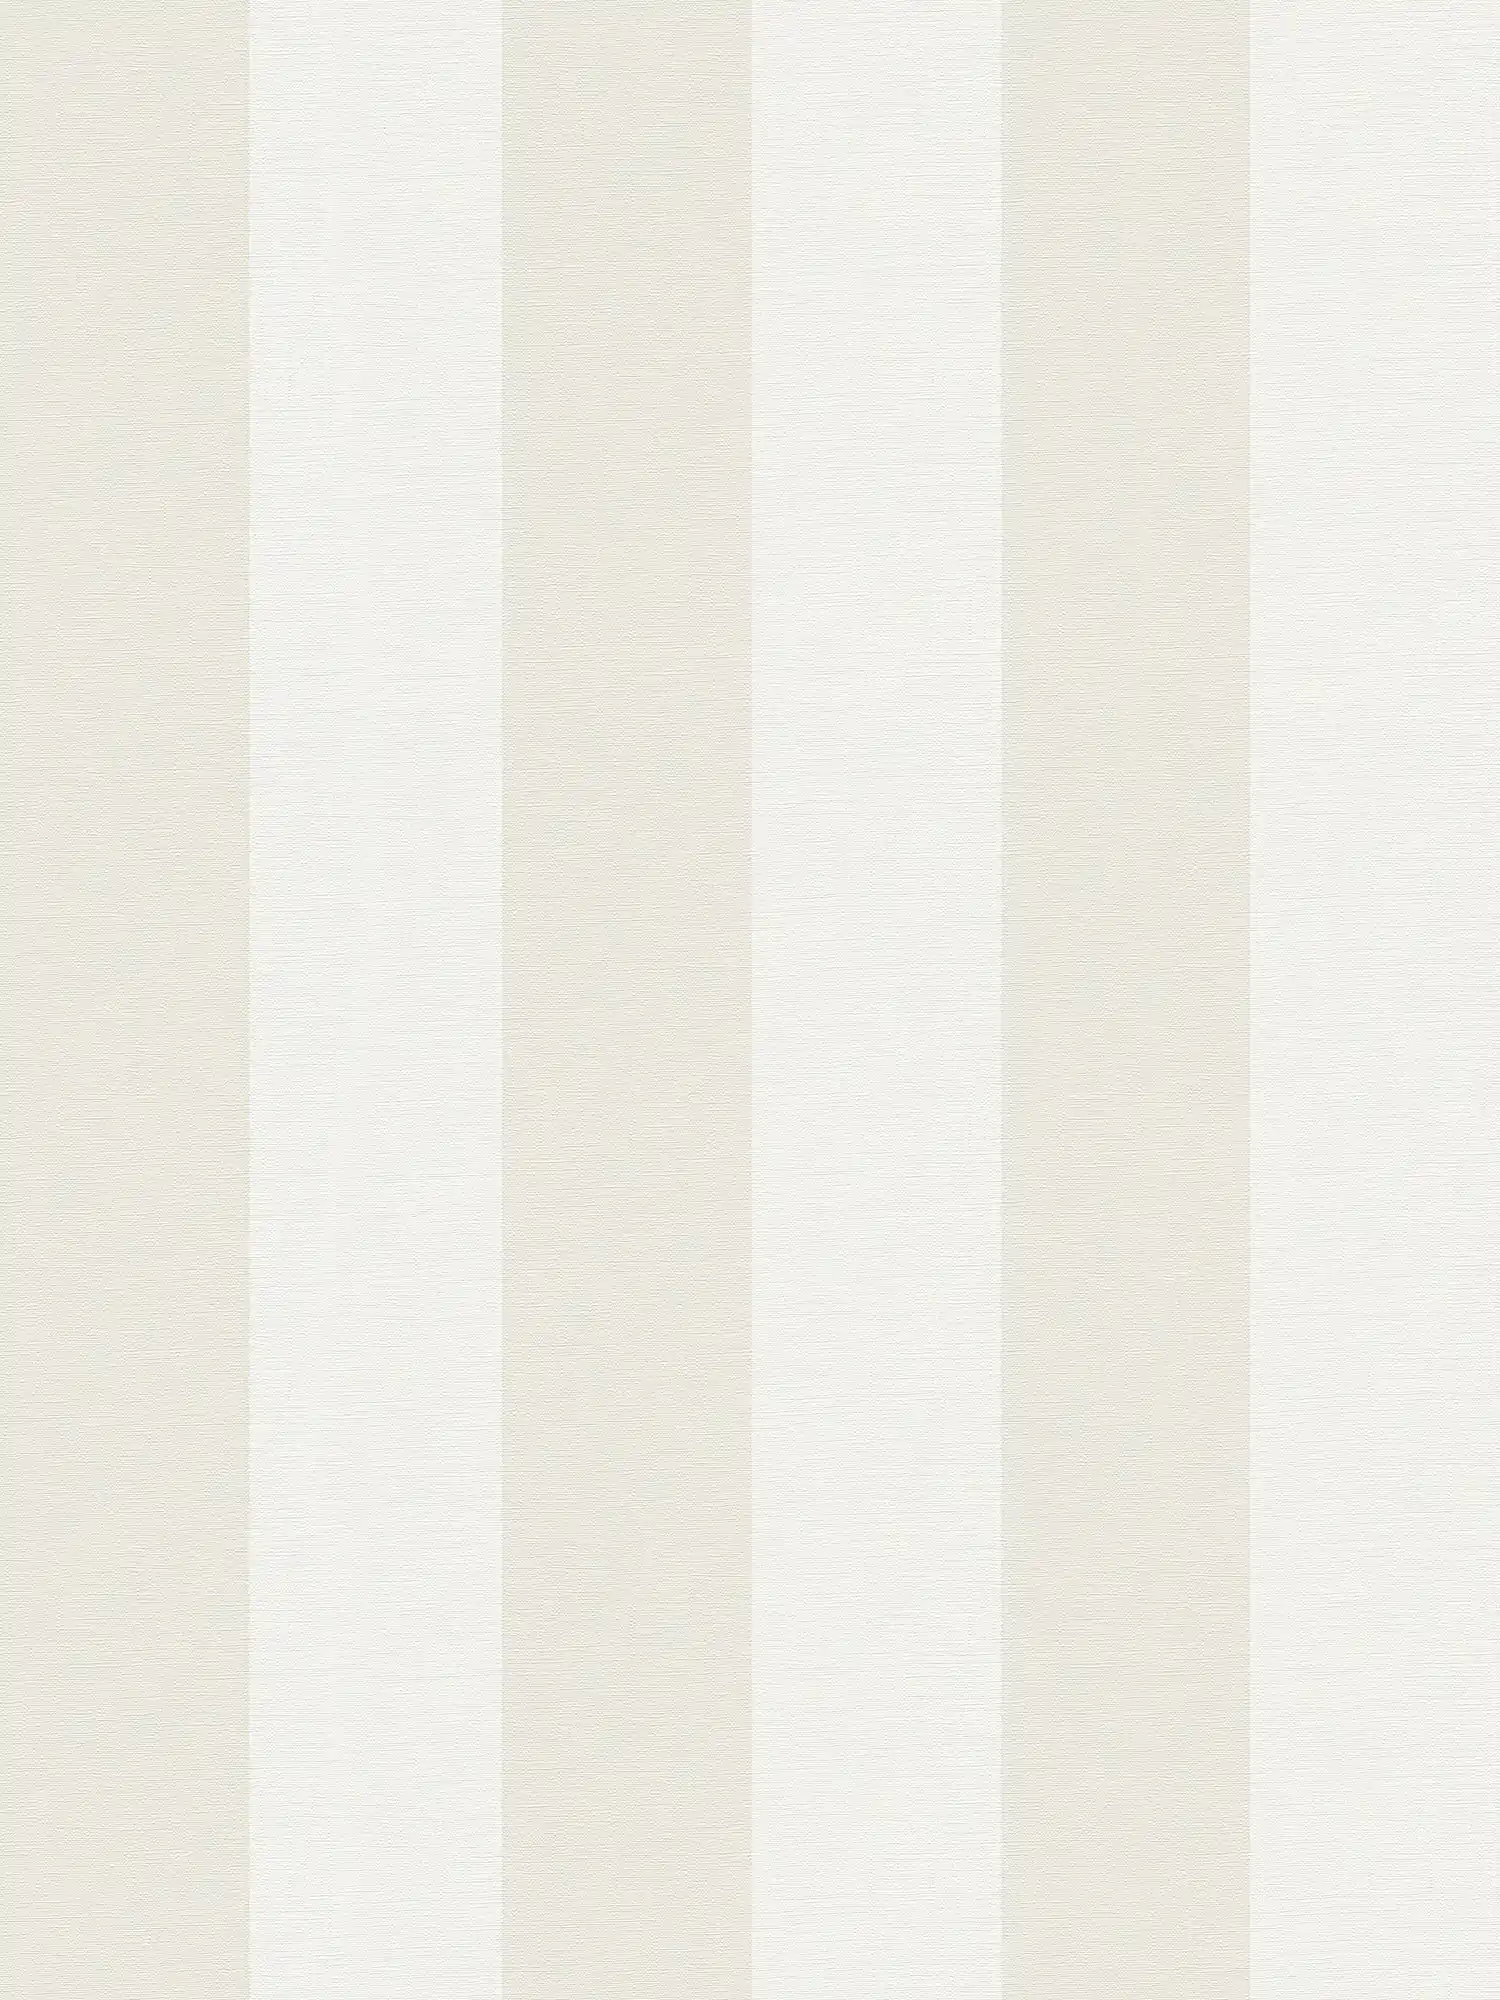 Blokstreepbehang met textiellook voor jong design - beige, wit
